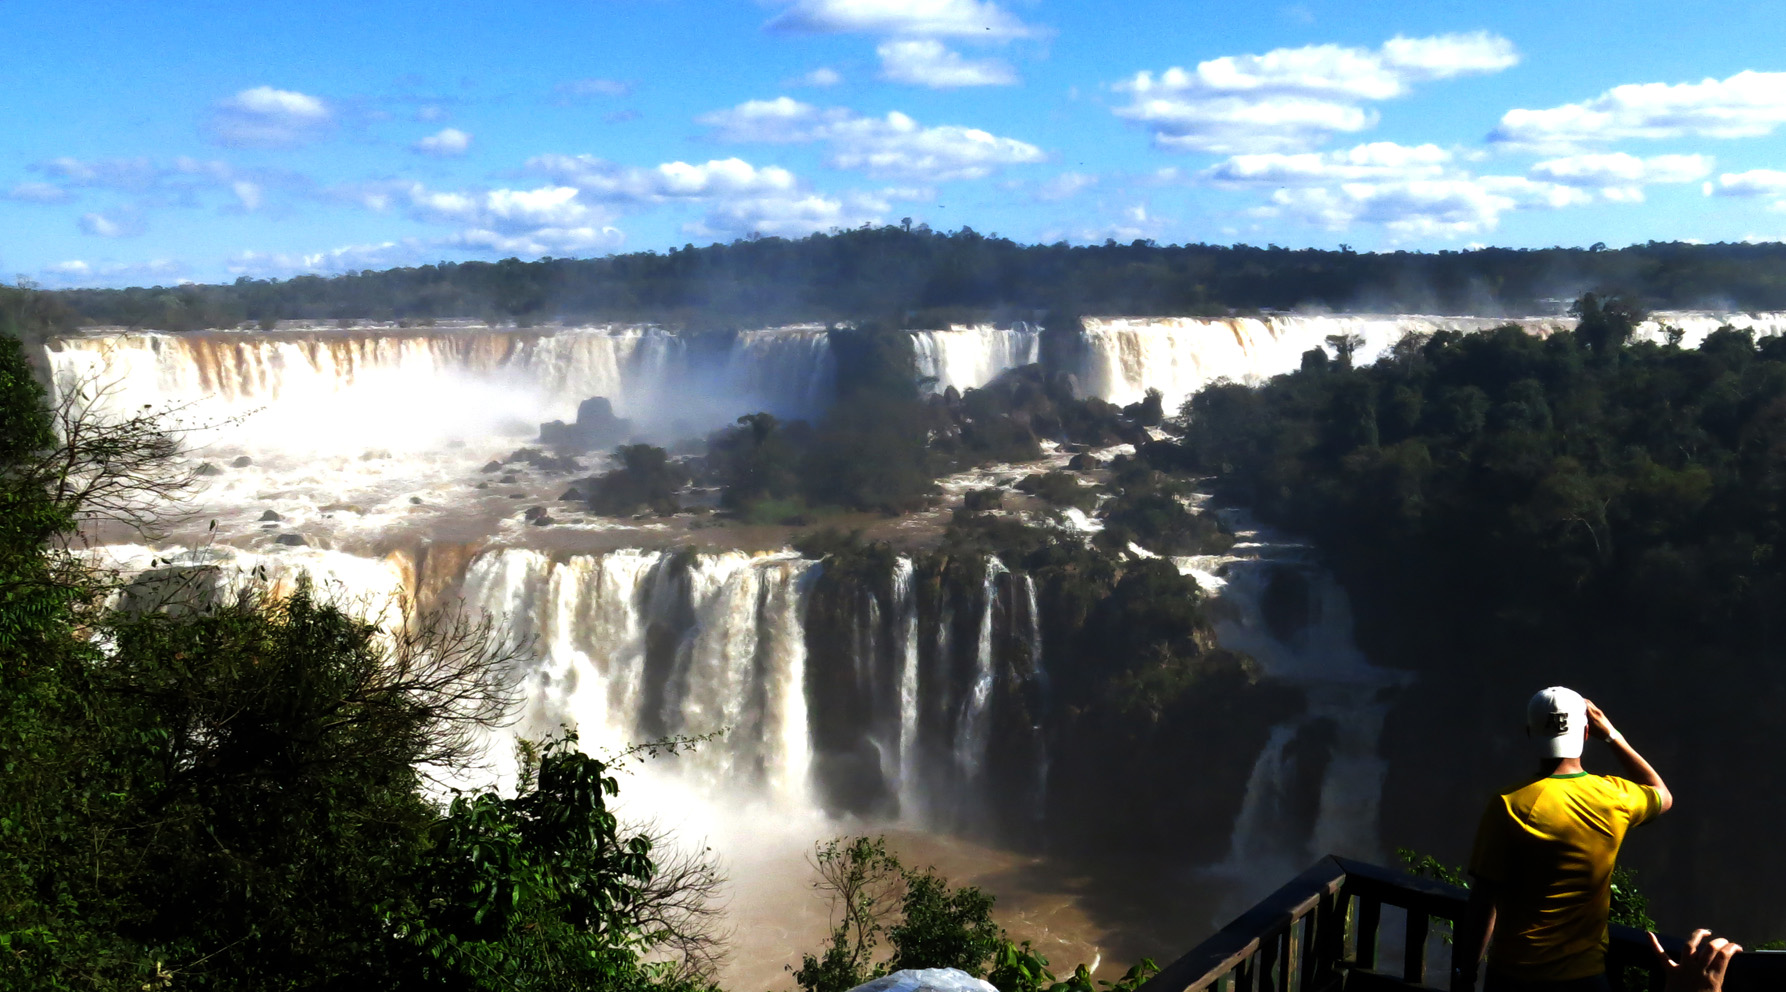 Vista de las Cataratas de Iguazú desde el lado brasileño. Foto:Silvina Frydlewsky